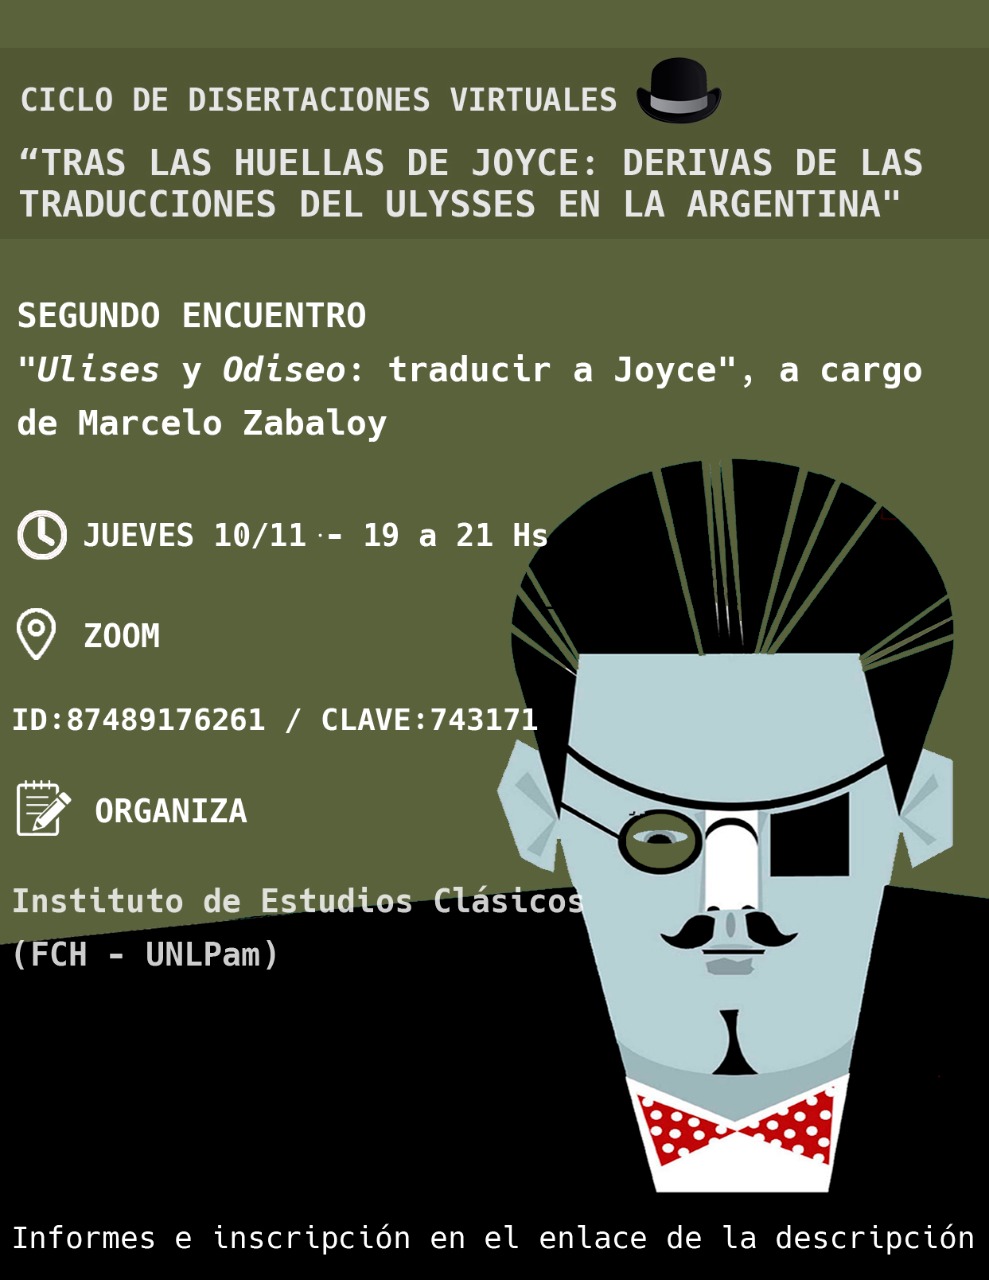 Tras las huellas de Joyce: derivas de las traducciones del Ulysses en la Argentina - Segundo Encuentro